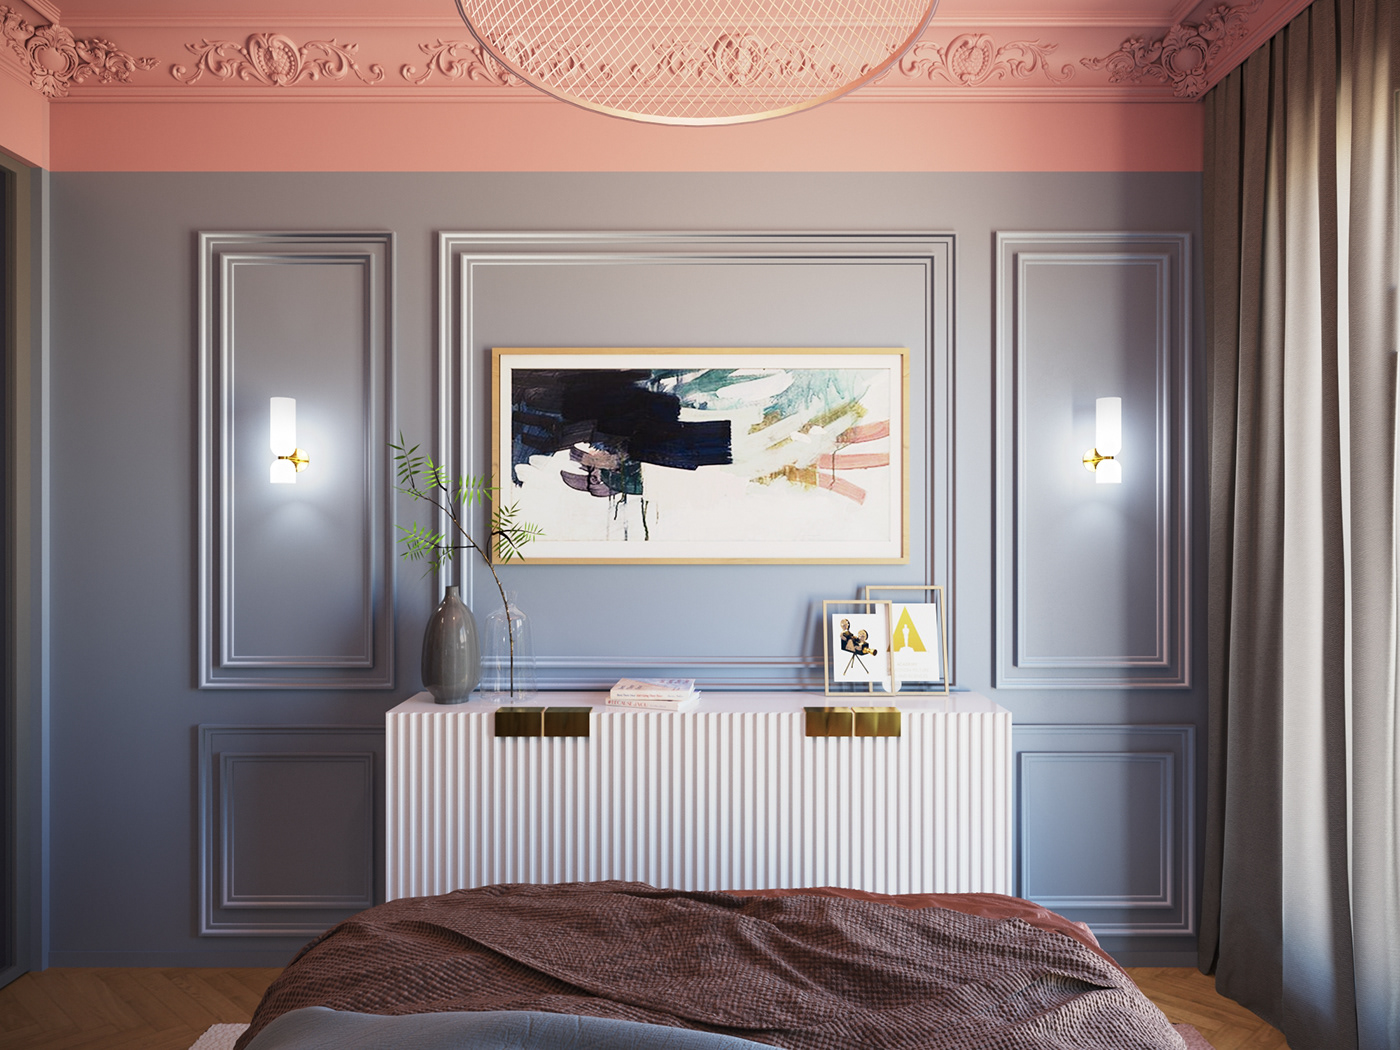 apartmentdesign bedroom Interior interiorapartment interiordesign visualization visualizer